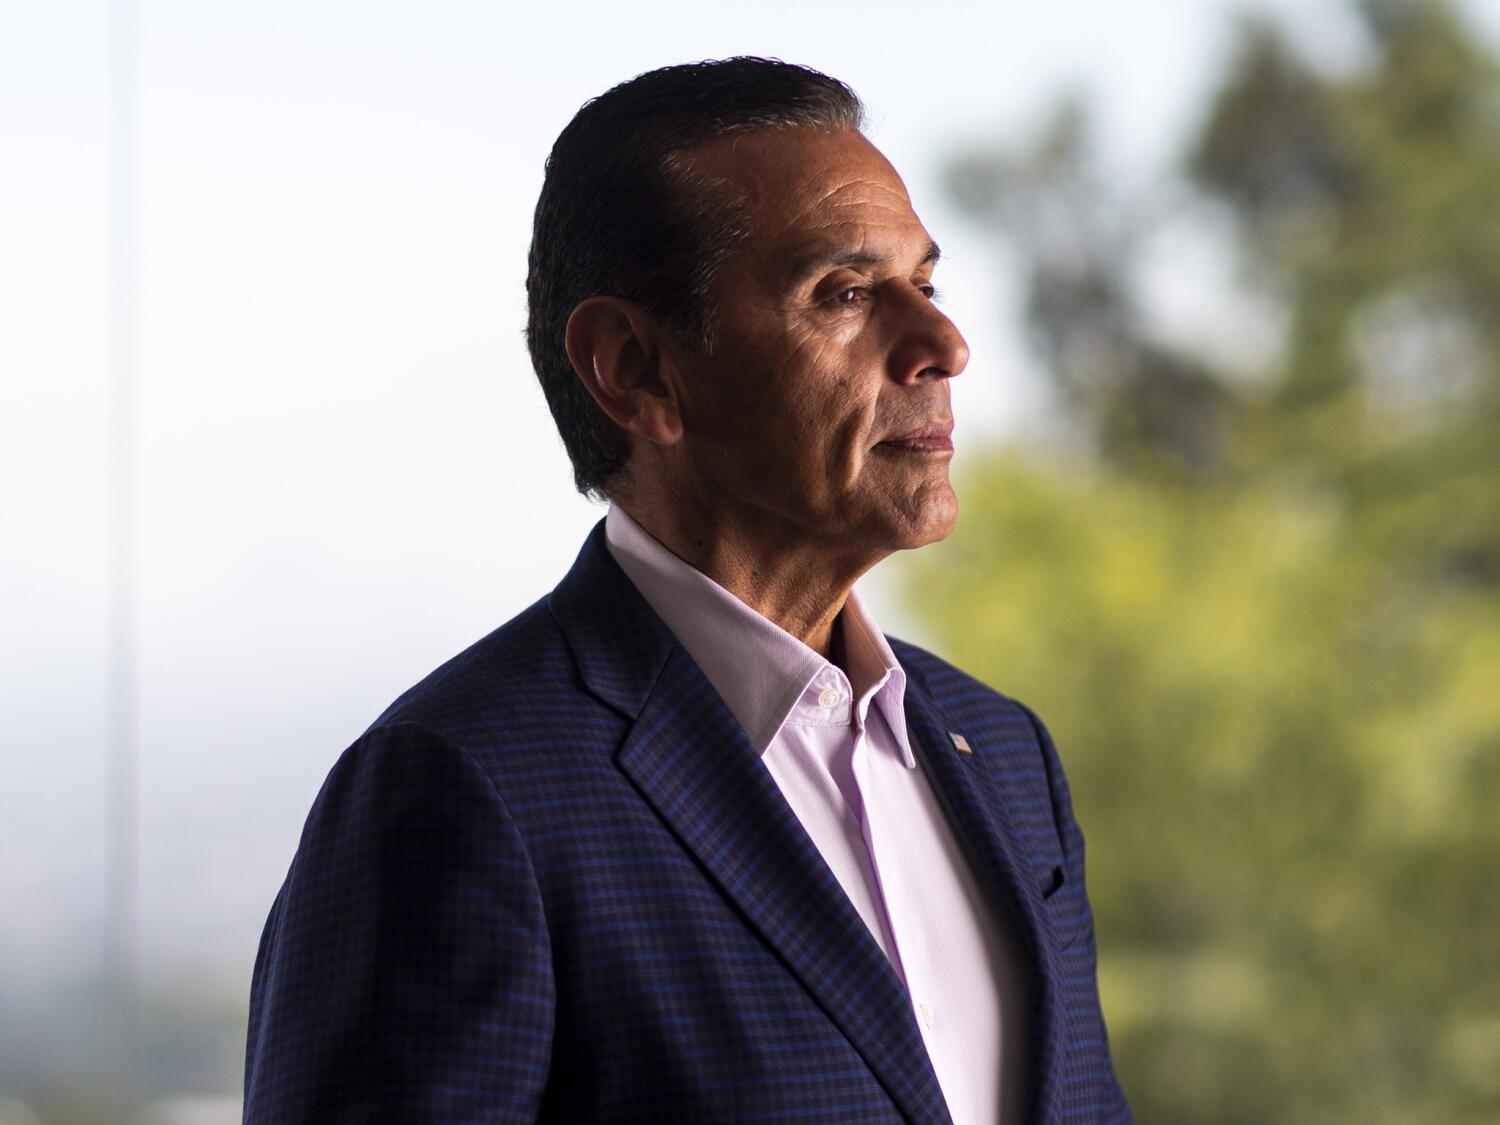 Former L.A. Mayor Antonio Villaraigosa announces another run for California governor